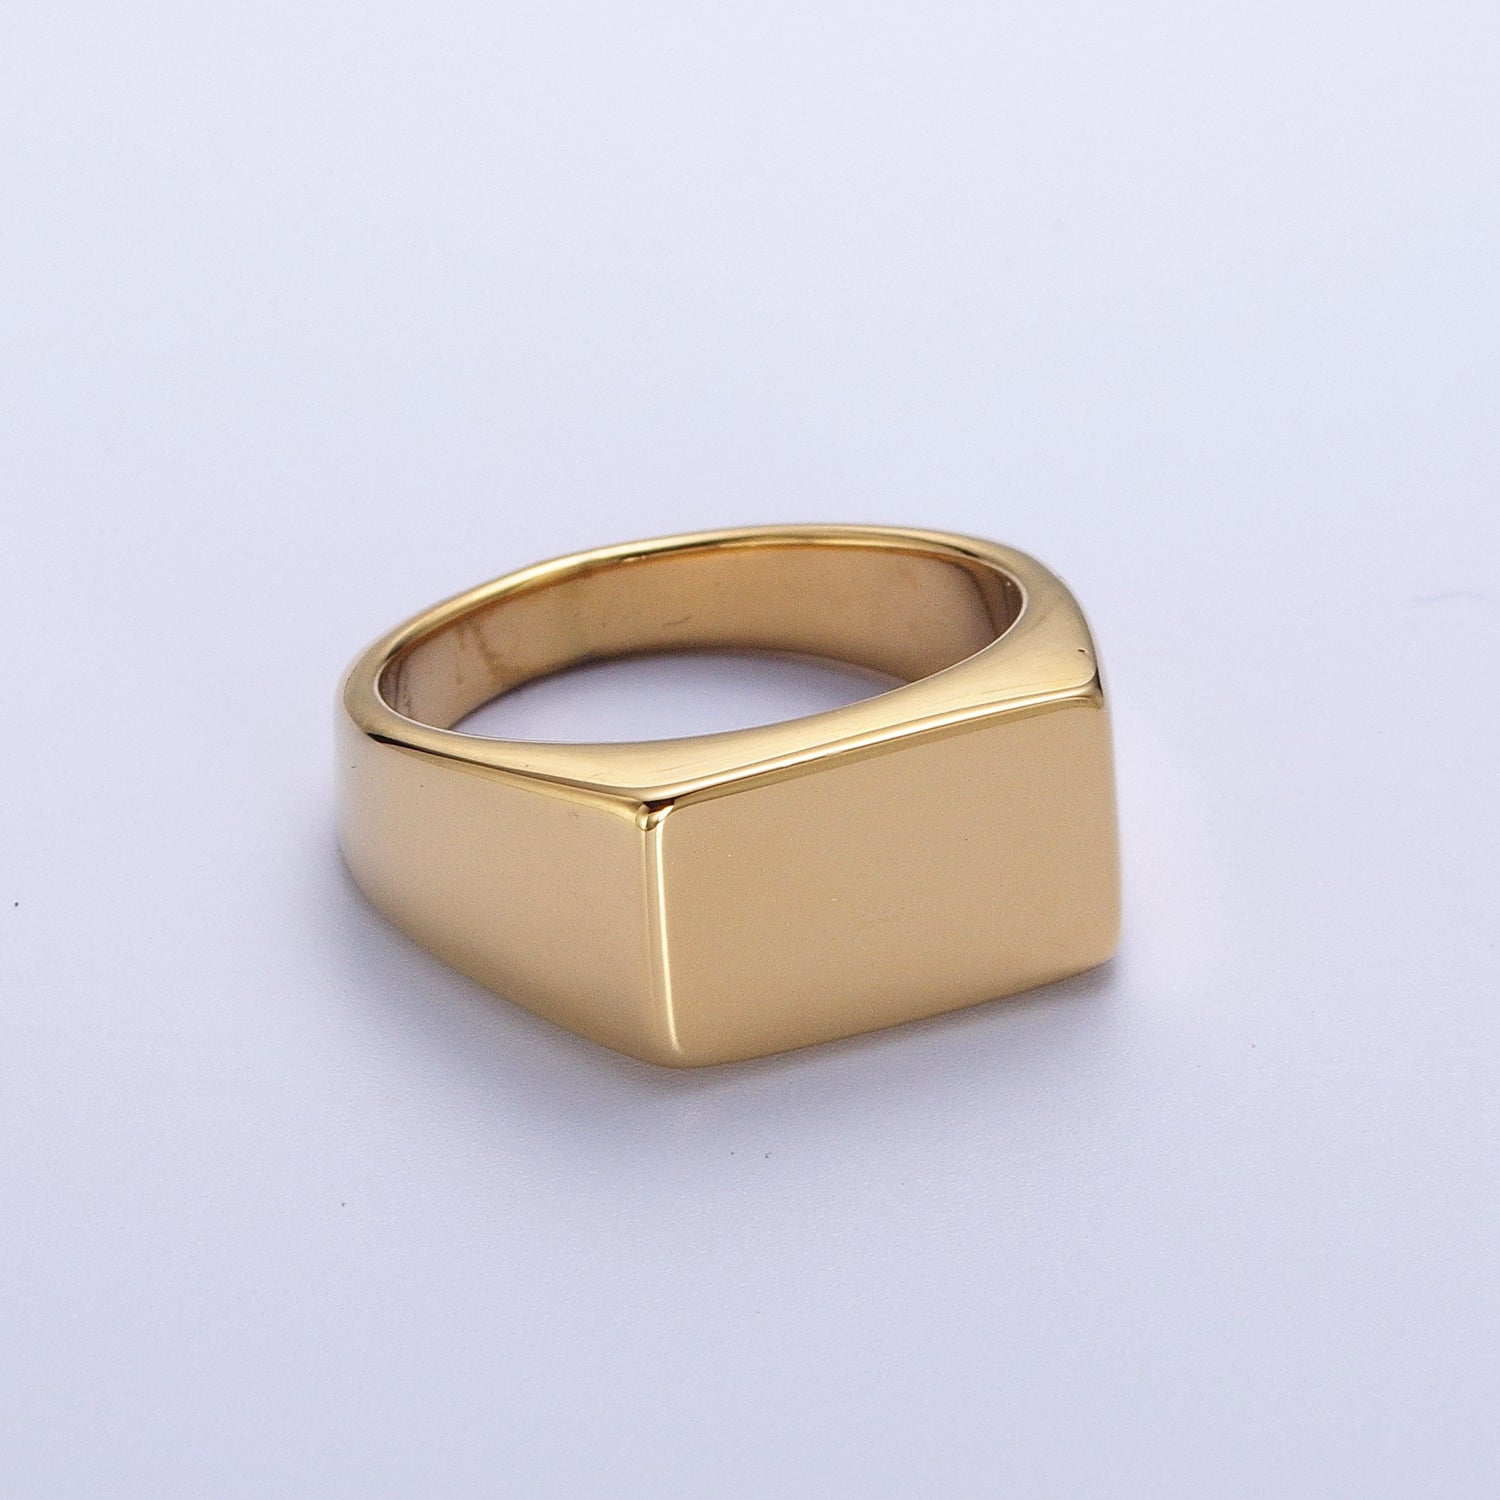 Minimalist Rectangular Signet Stainless Steel Ring in Gold & Silver | V069-V072 - DLUXCA